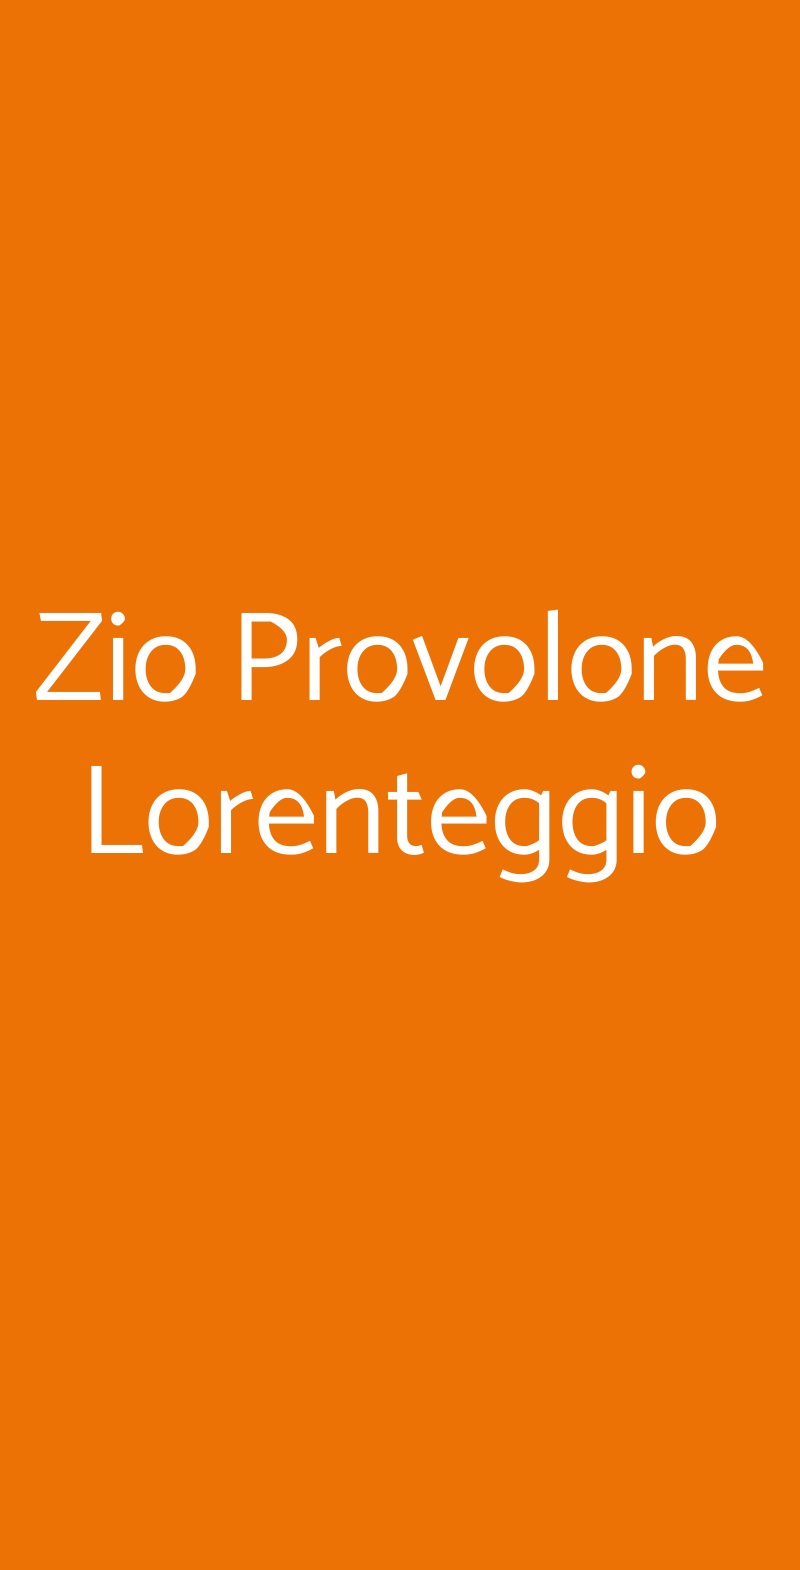 Zio Provolone Lorenteggio Milano menù 1 pagina